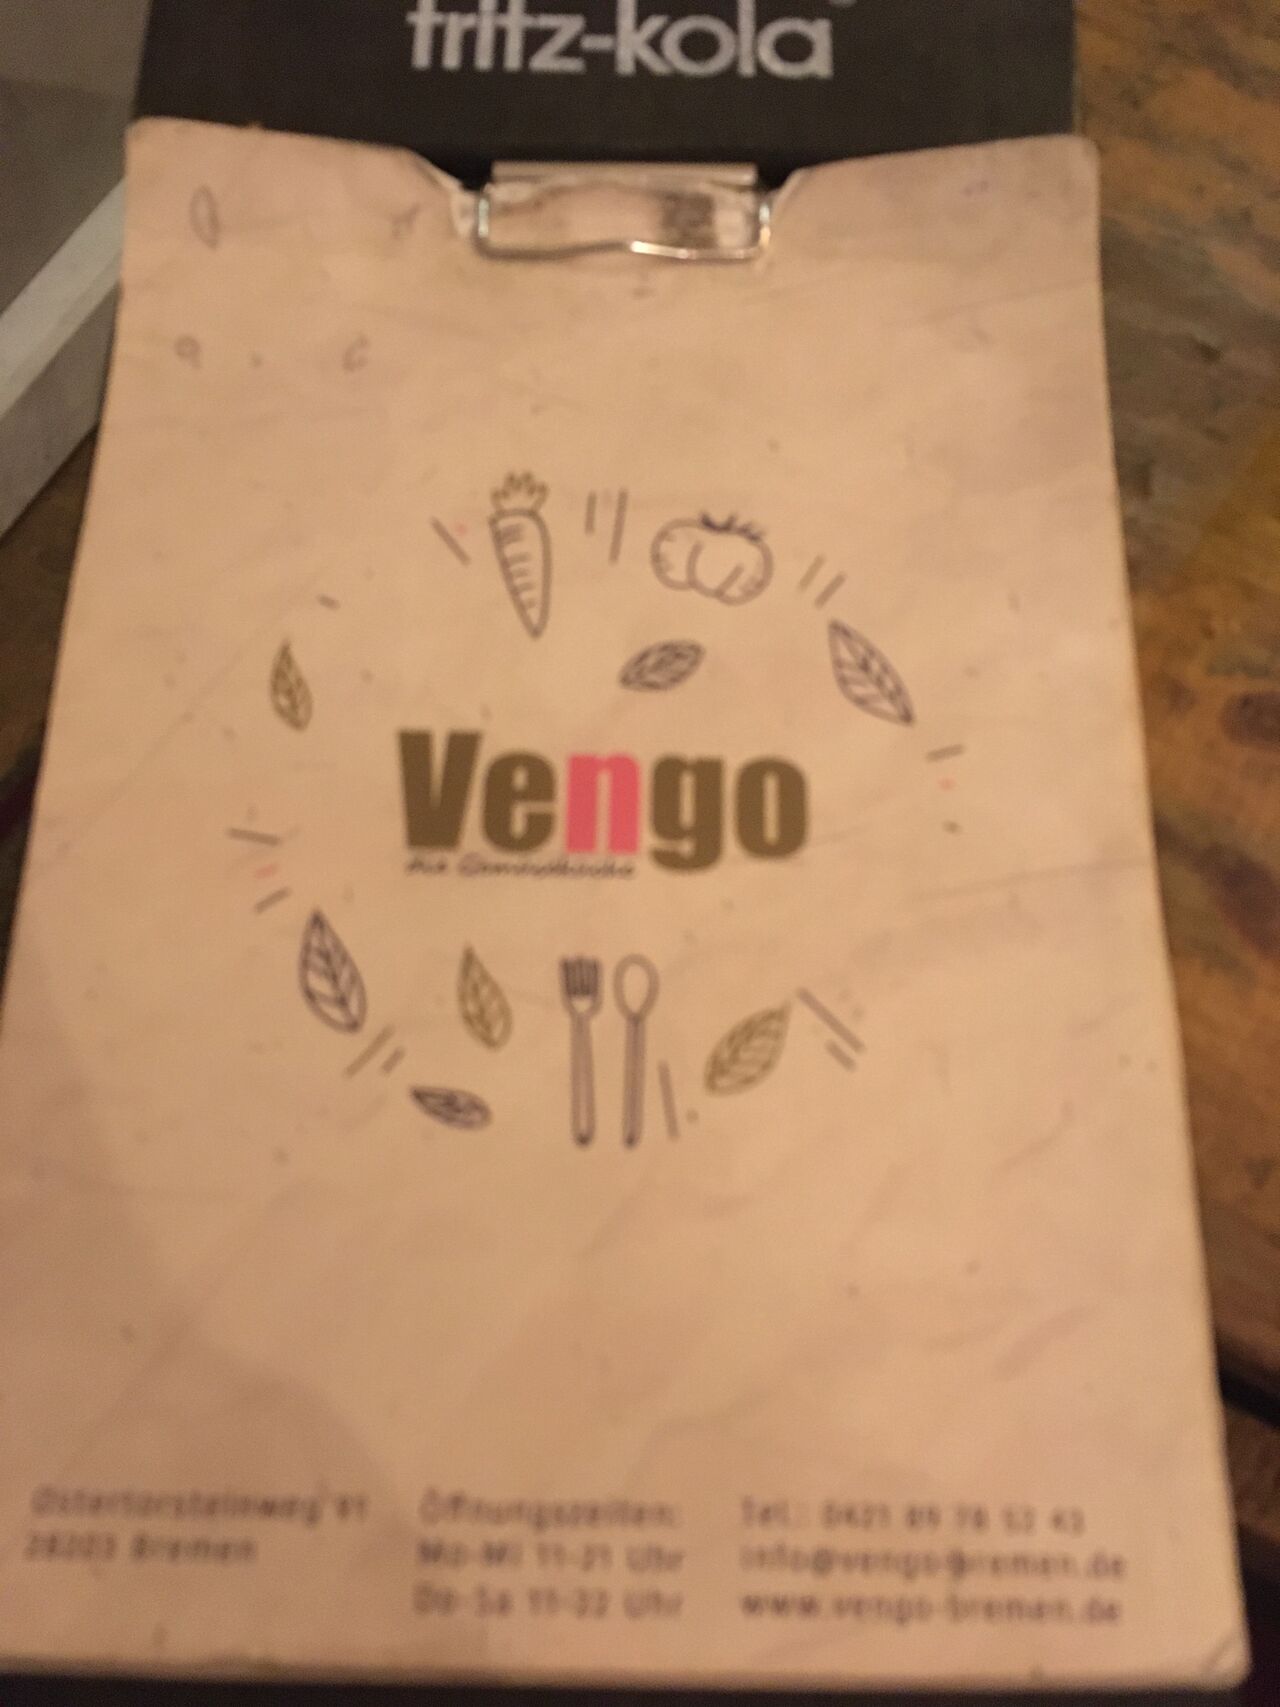 A photo of Vengo